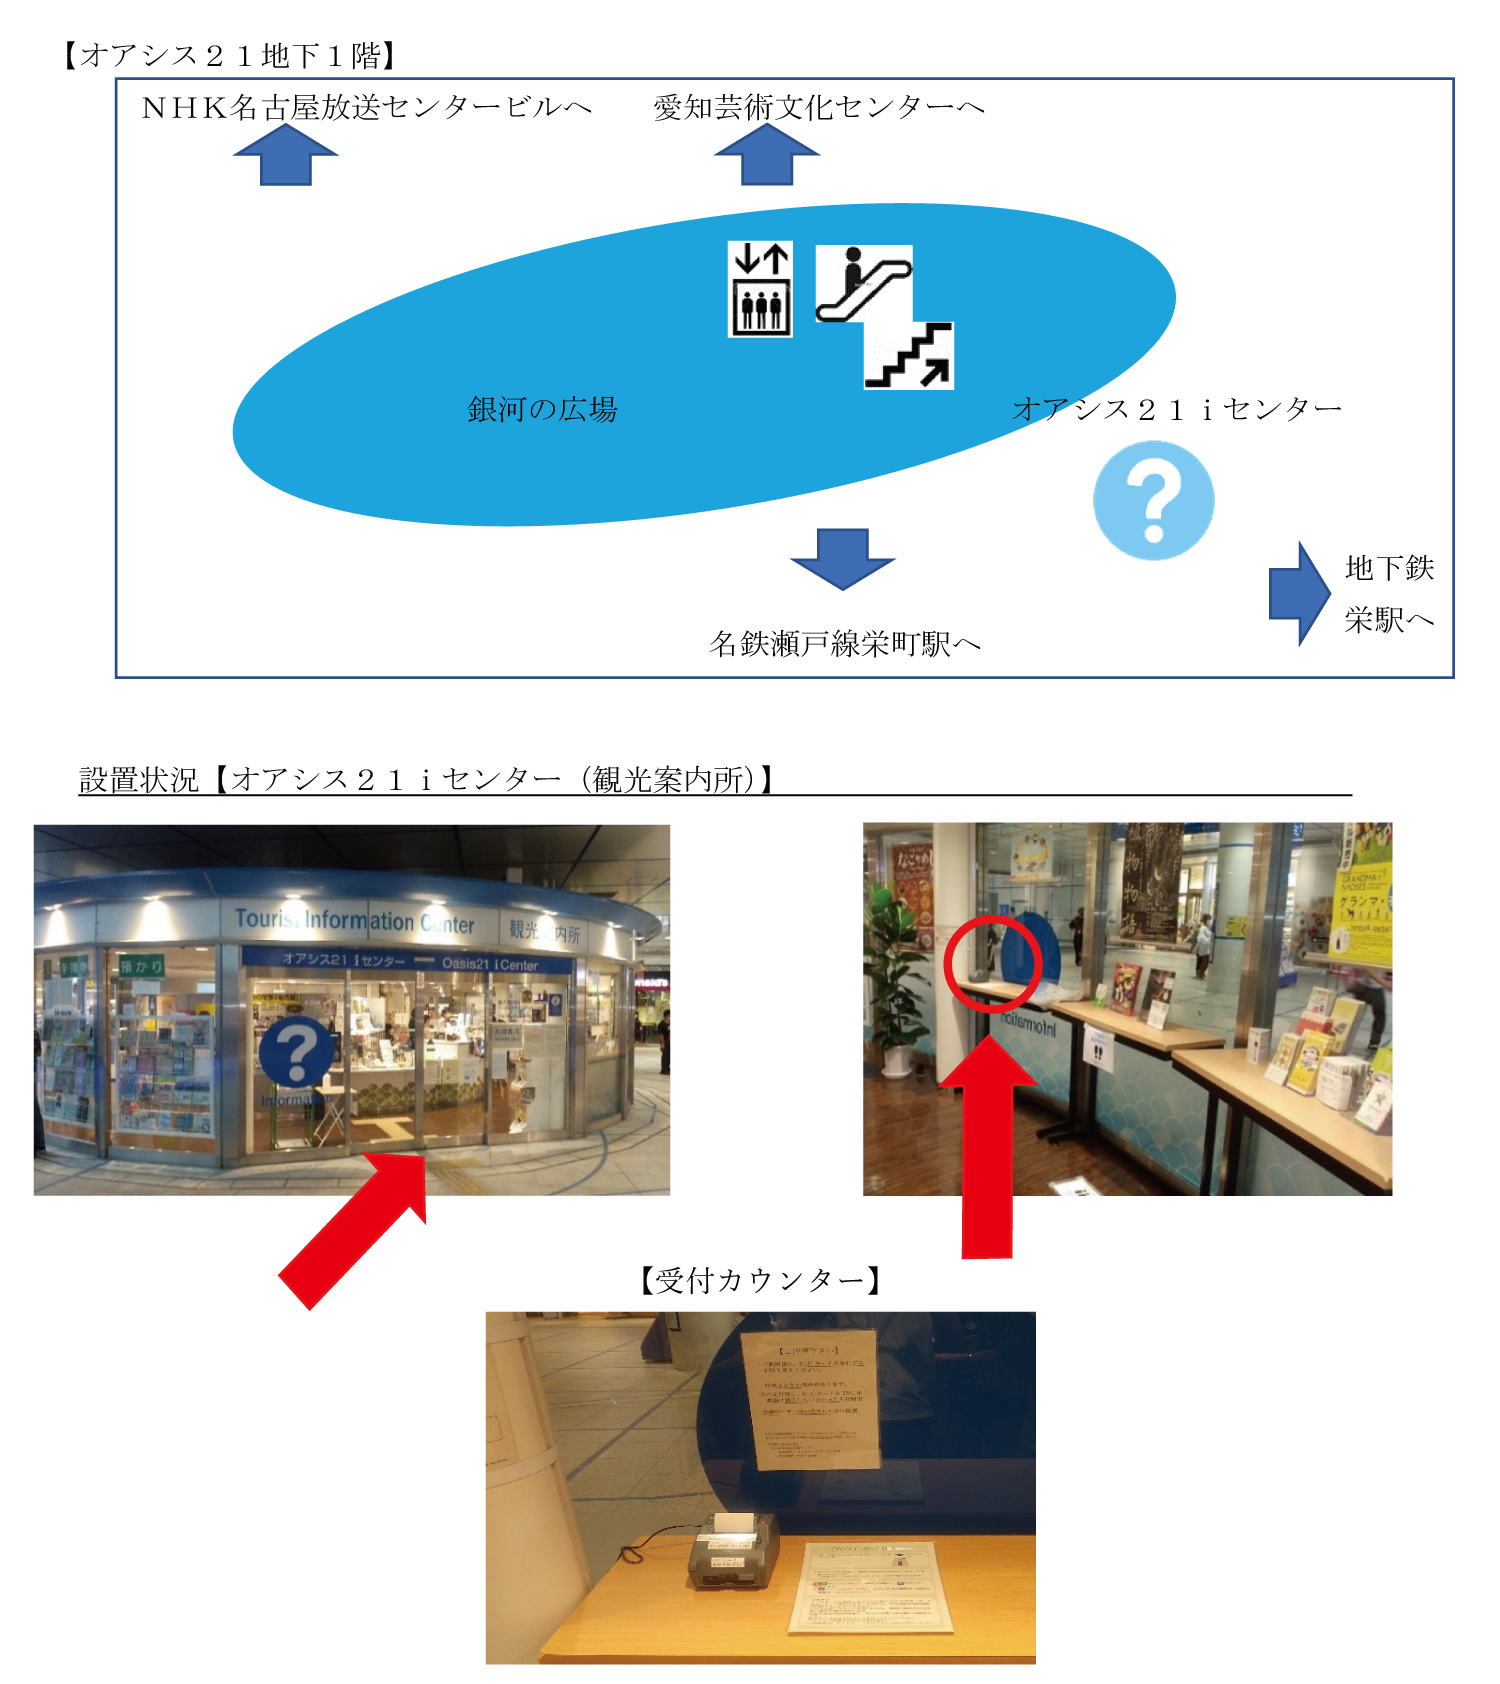 画像上部にはオアシス21内の概略図が記載されている。地下1階中央の銀河の広場の南寄りにiセンター（観光案内所）がある。画像下部にはiセンターの写真を掲載し、ETC利用履歴発行プリンターの設置箇所を示している。観光案内所内の受付カウンター上に設置されている。